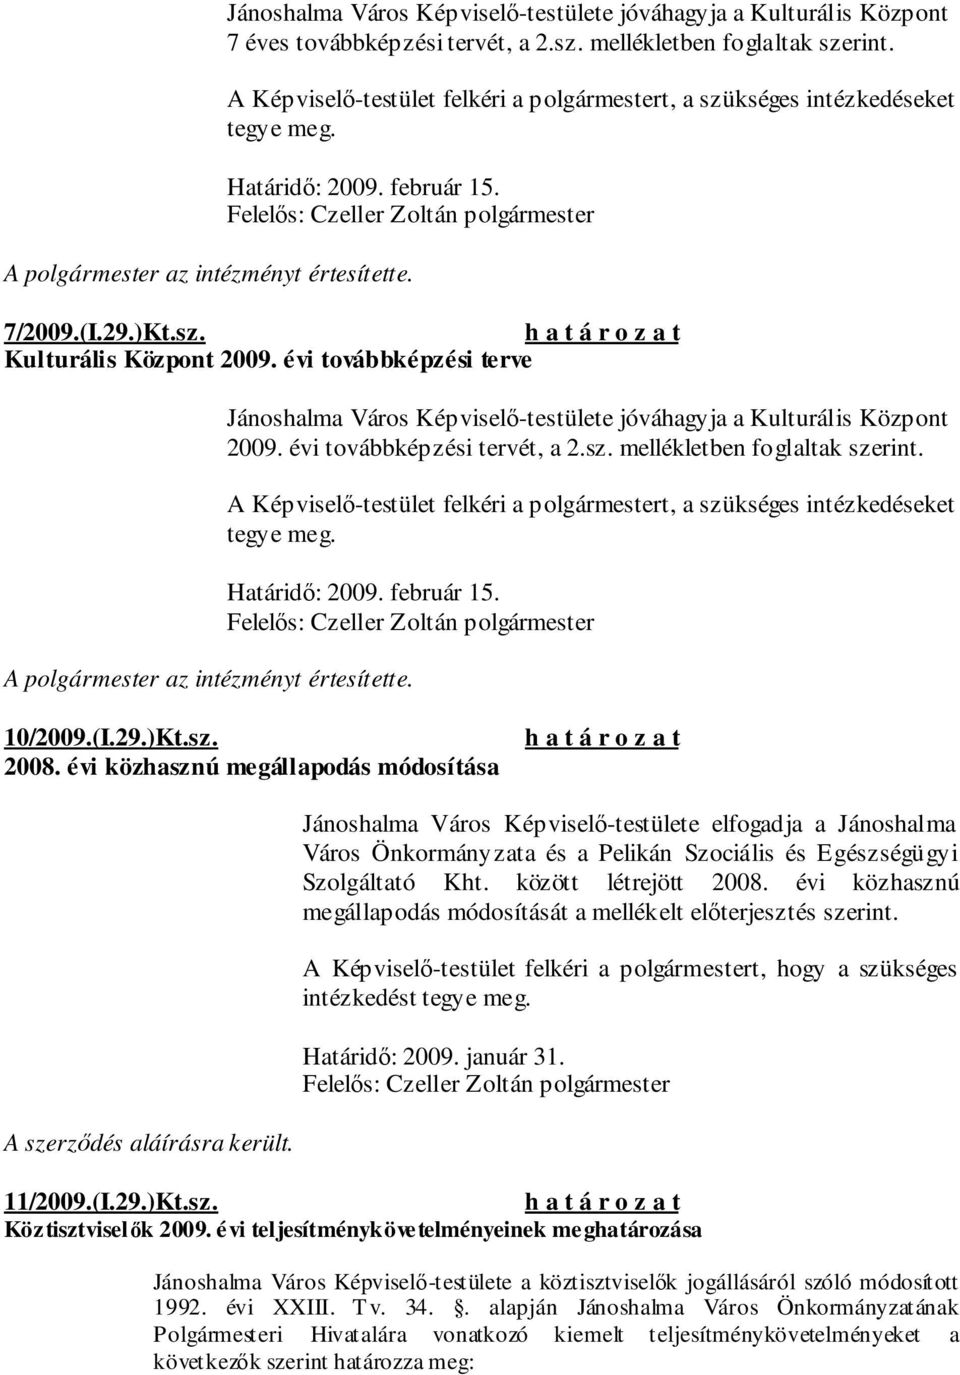 évi közhasznú megállapodás módosítása Jánoshalma Város Képviselı-testülete elfogadja a Jánoshalma Város Önkormányzata és a Pelikán Szociális és Egészségügyi Szolgáltató Kht. között létrejött 2008.